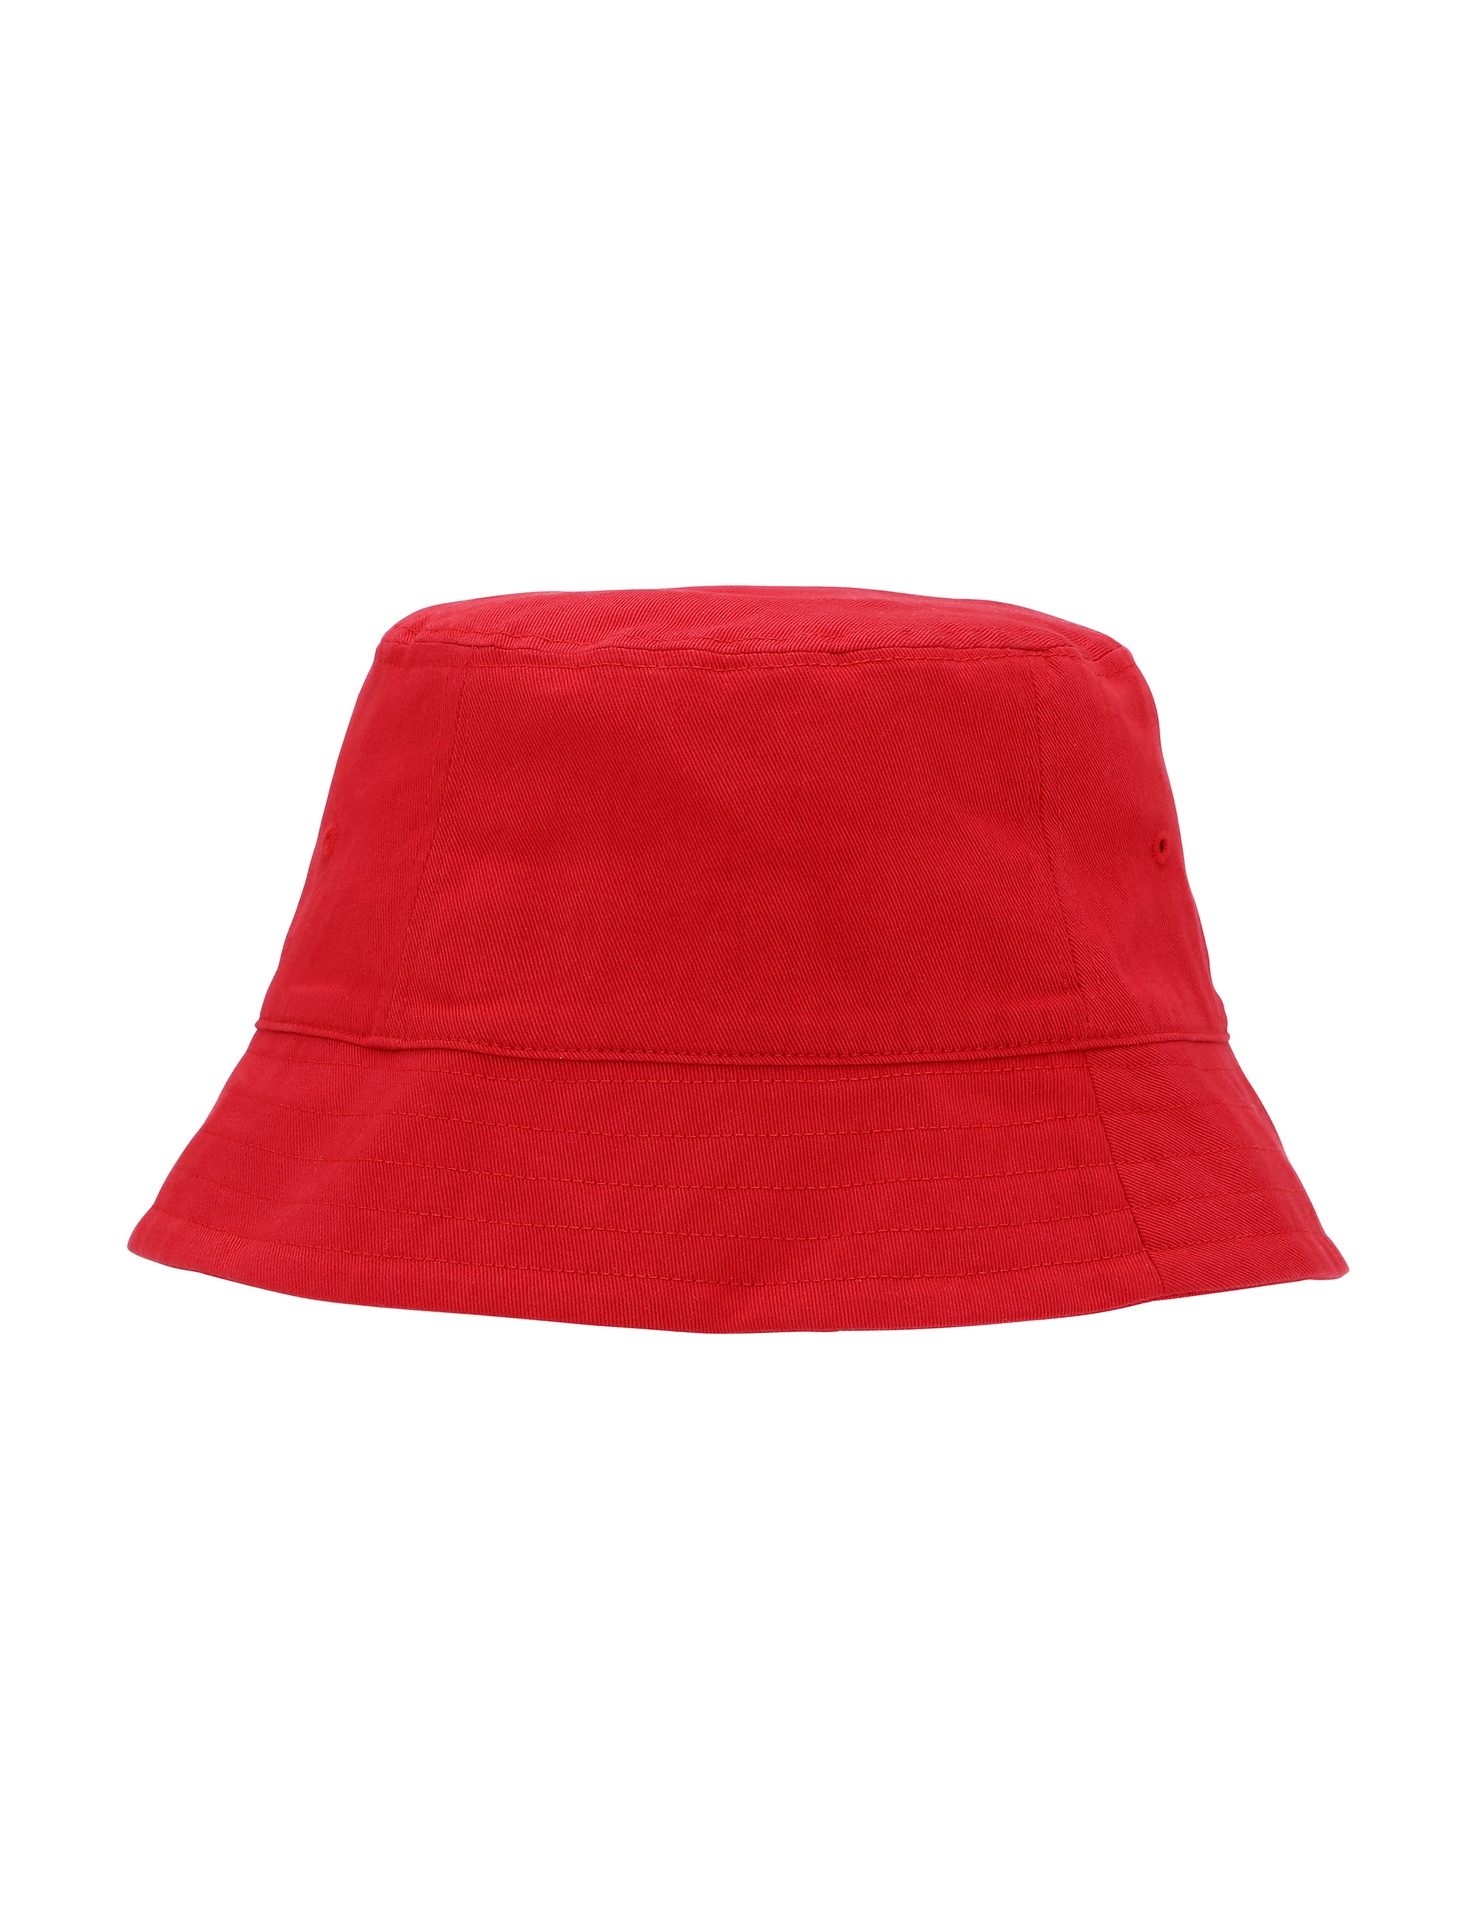 [PR/05935] Bucket Hat (Red 05, M/L)